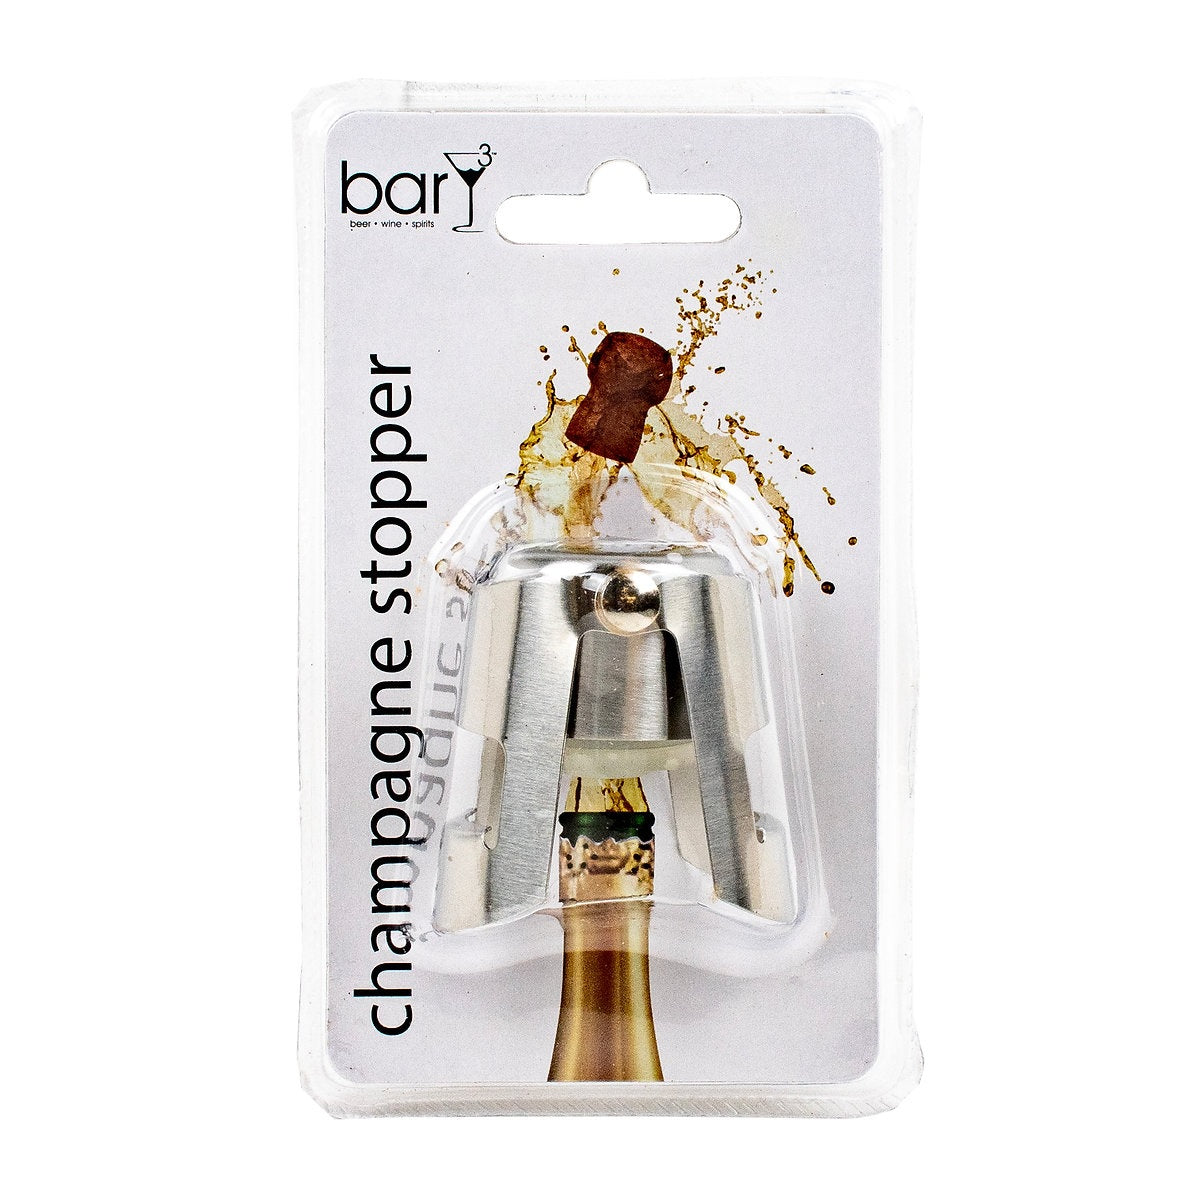 BarY3 BAR-0750 Bottle Stopper, Silver, Stainless Steel